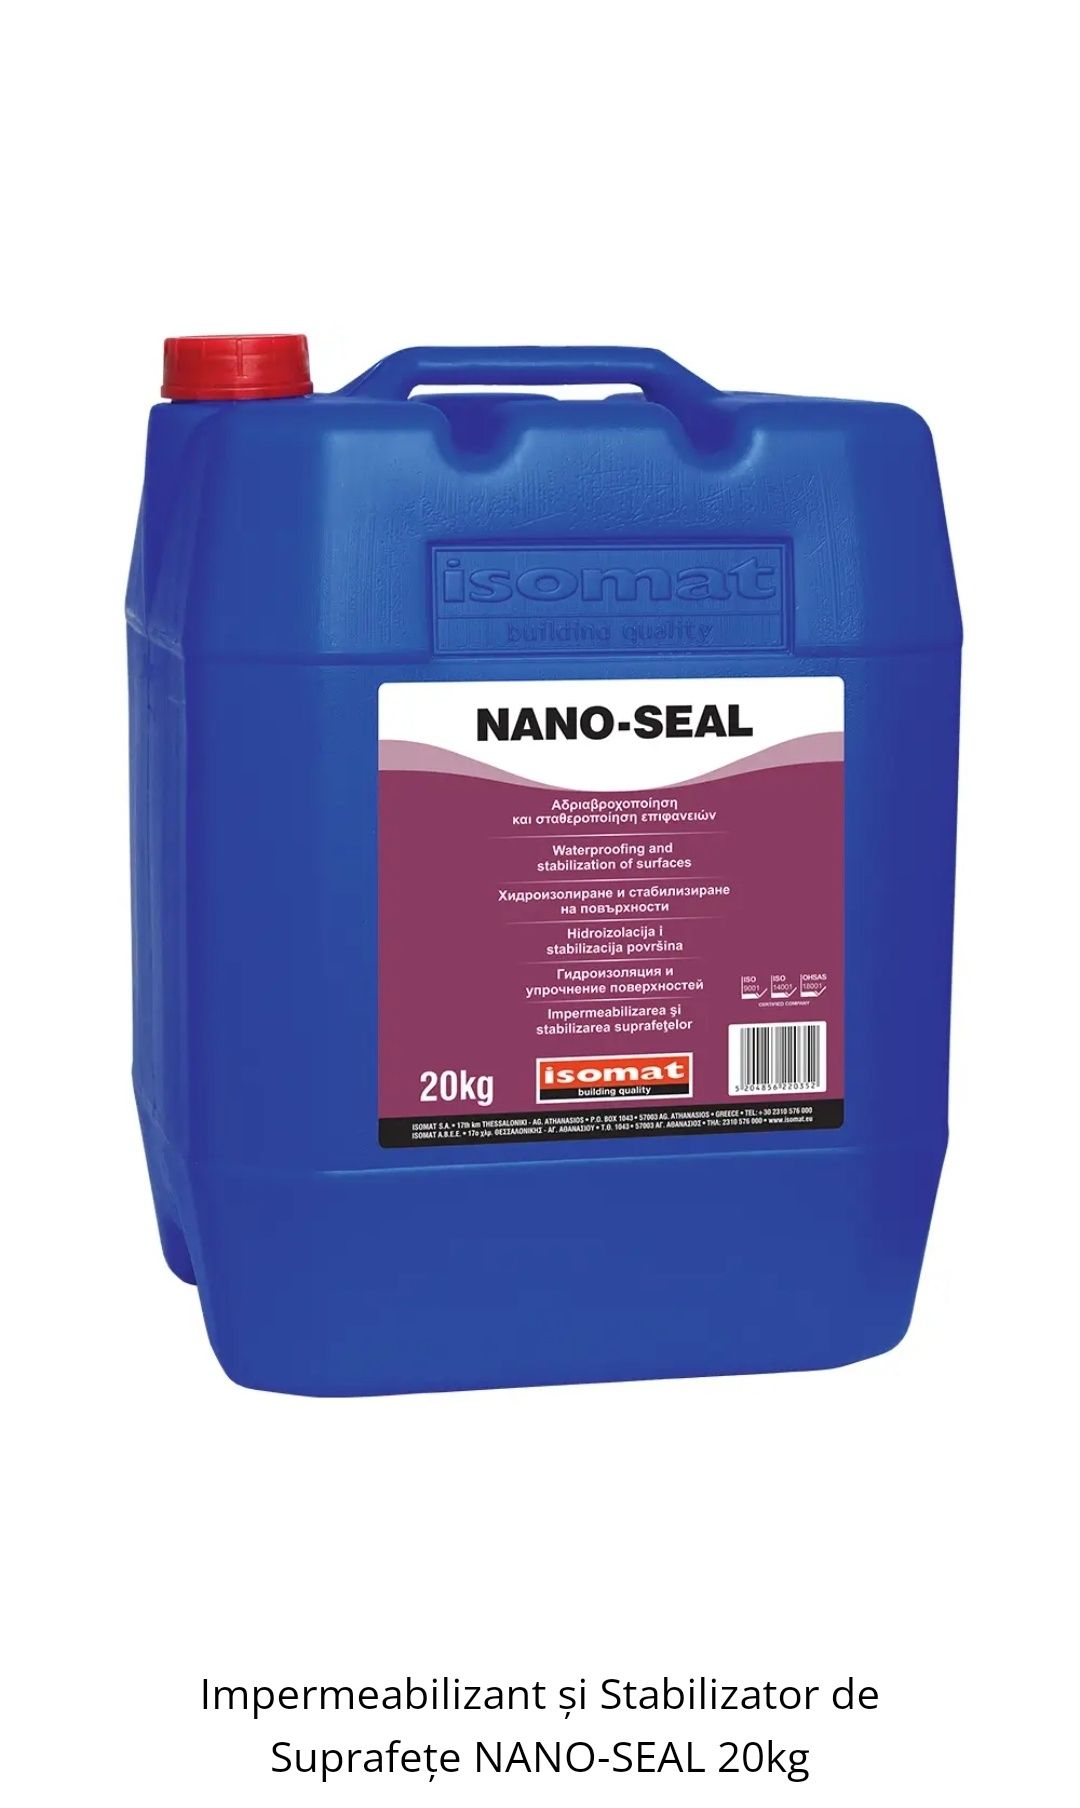 Impermeabilizant și Stabilizator de Suprafețe NANO-SEAL 20kg